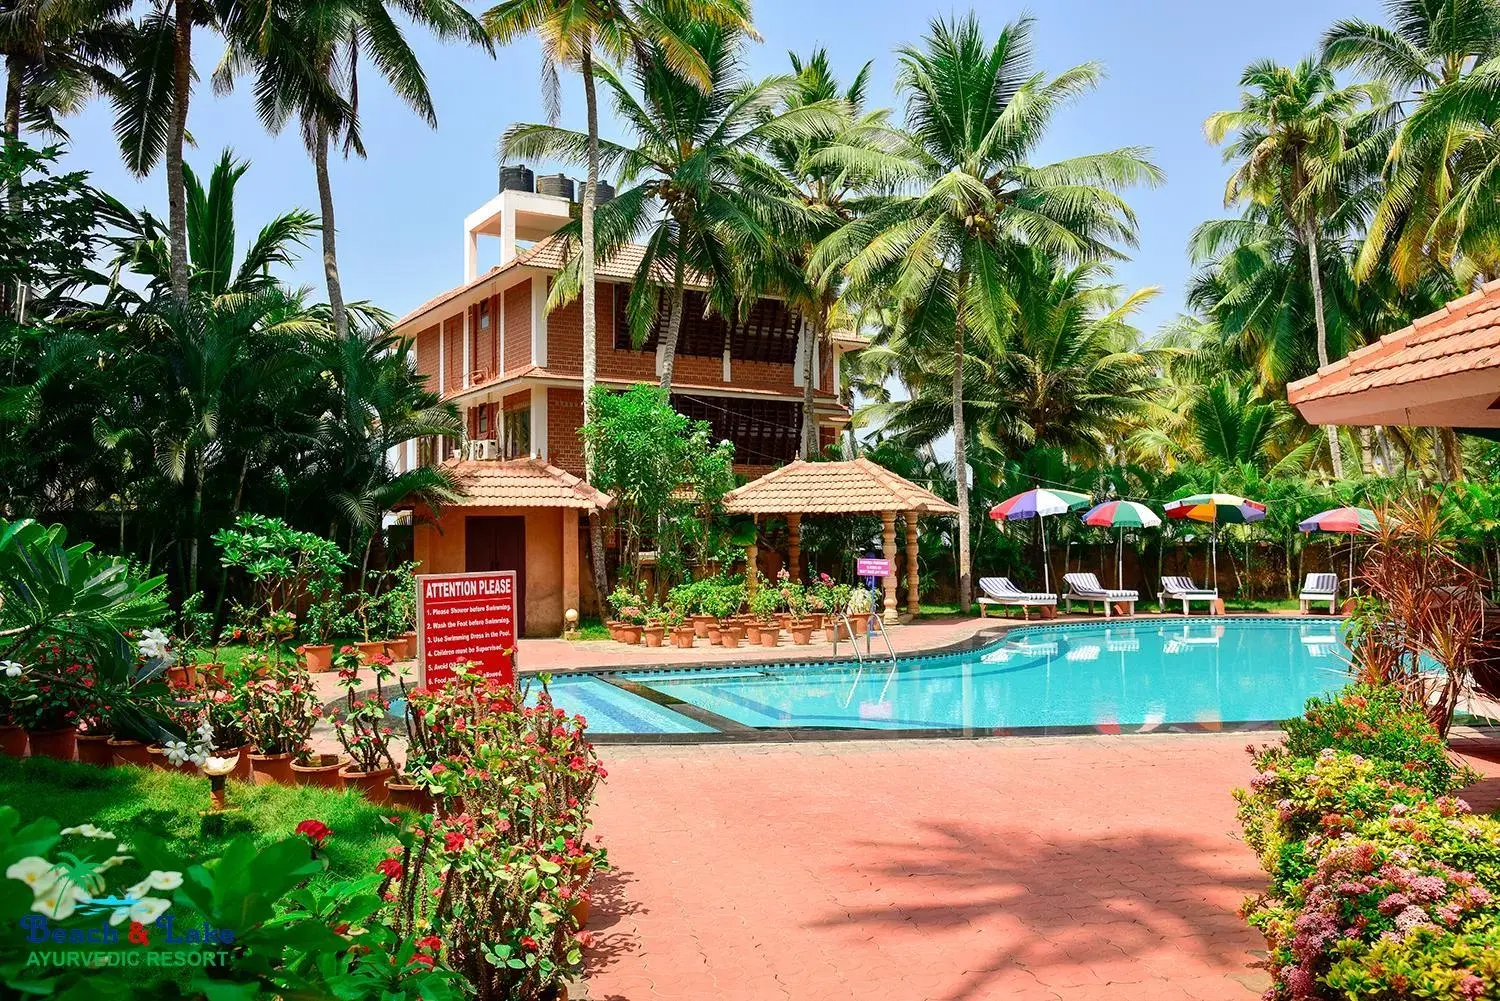 Property building, Swimming Pool in Beach and Lake Ayurvedic Resort